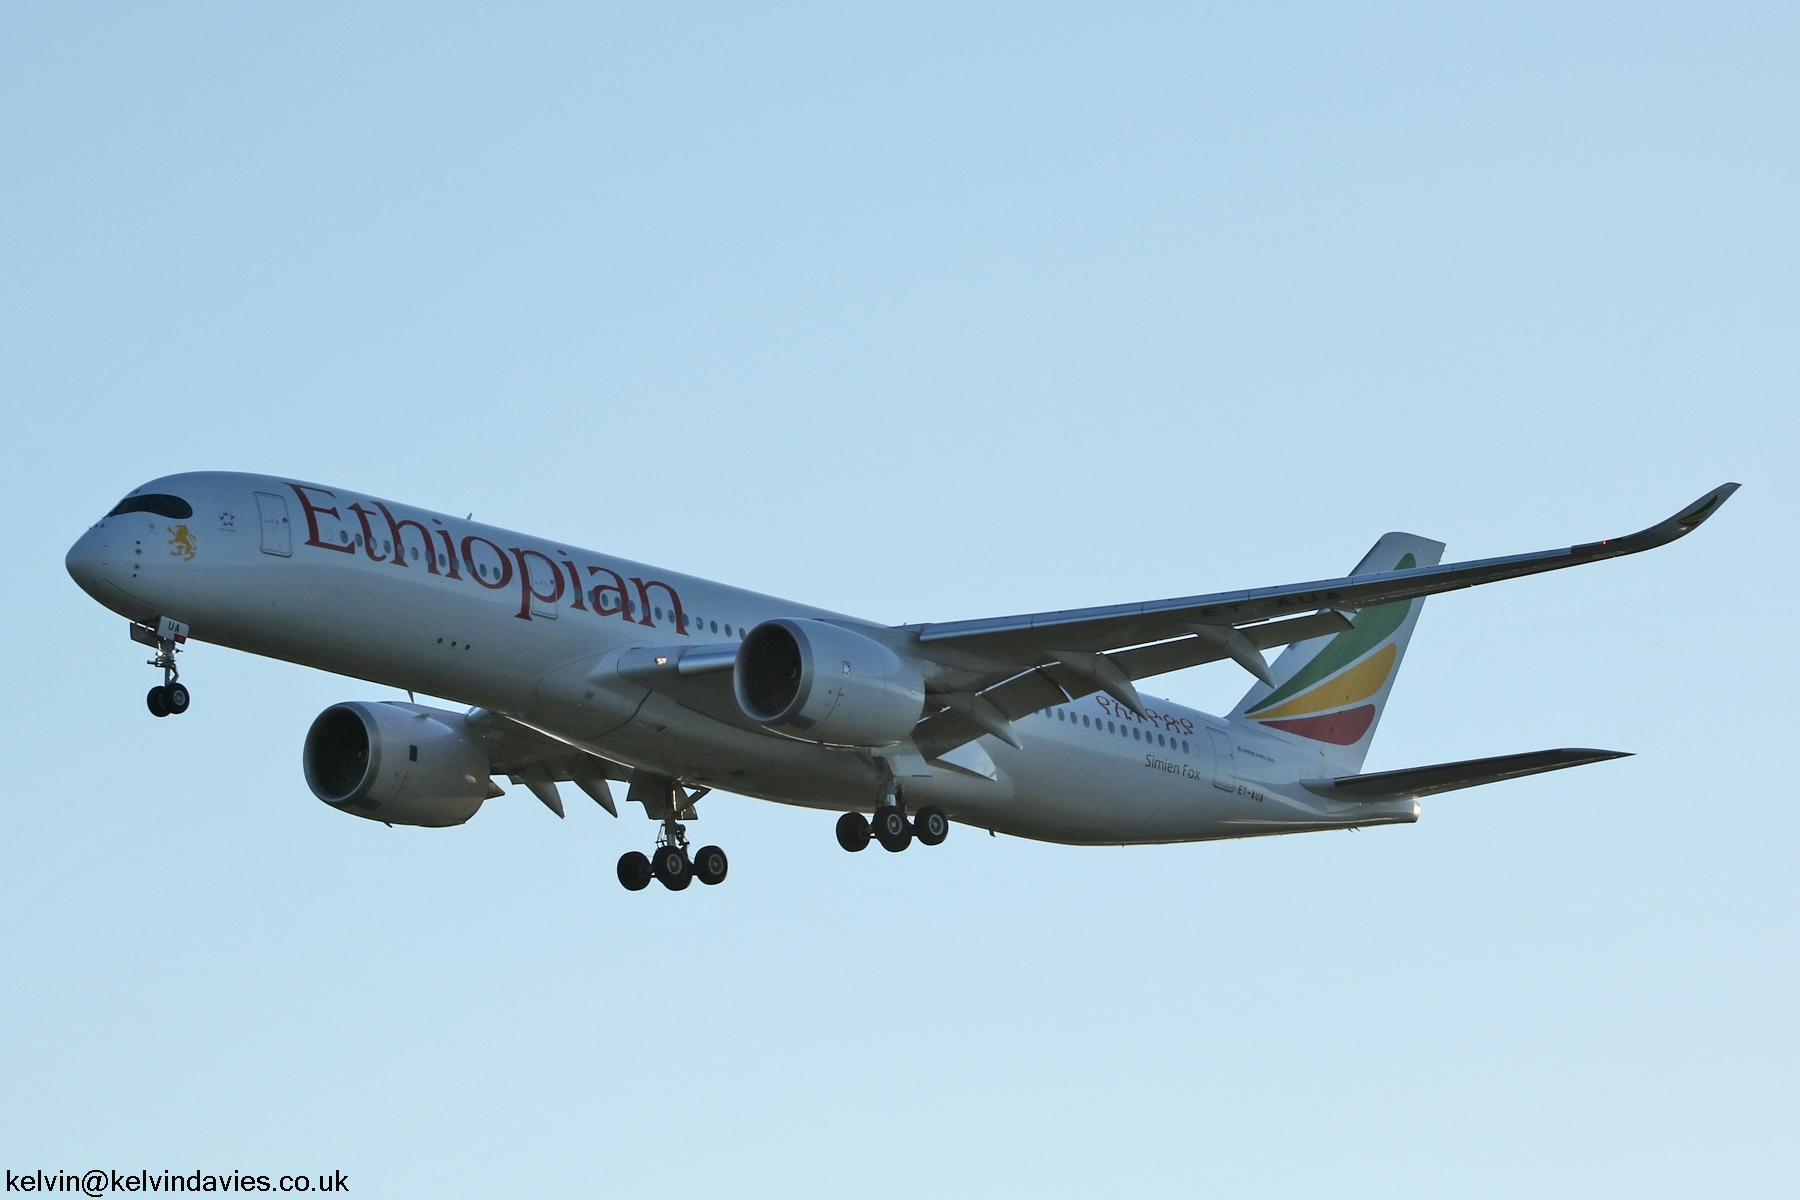 Ethiopian Airlines A350  ET-AUA